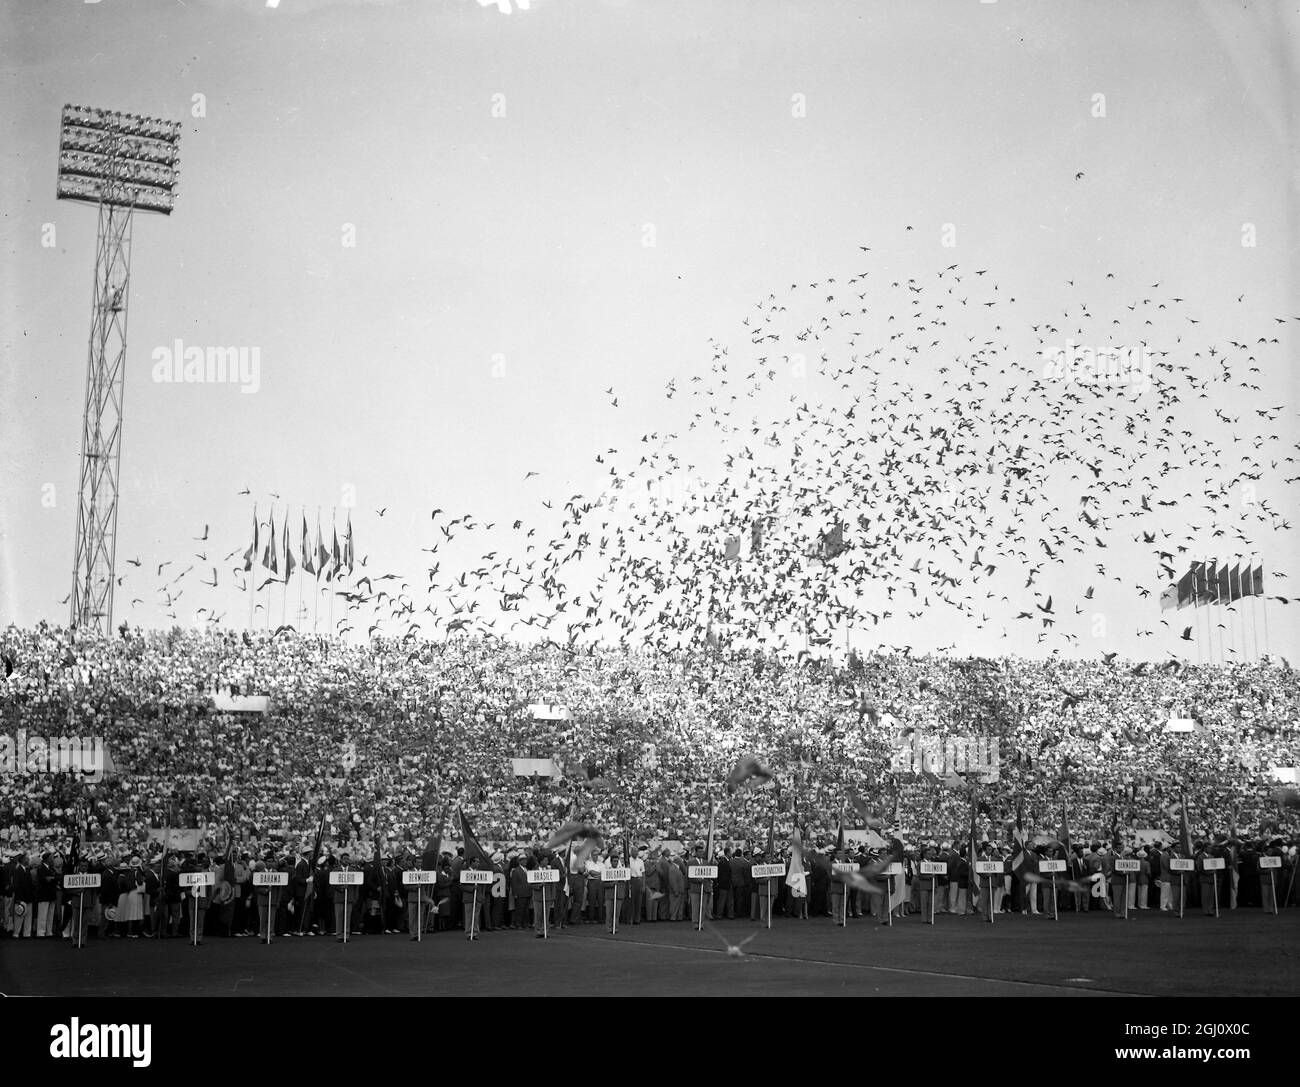 BIRDS TAUBEN VERÖFFENTLICHT ERÖFFNUNGSZEREMONIE DES OLYMPIASTADIONS ENDET AM 25. AUGUST 1960 Stockfoto